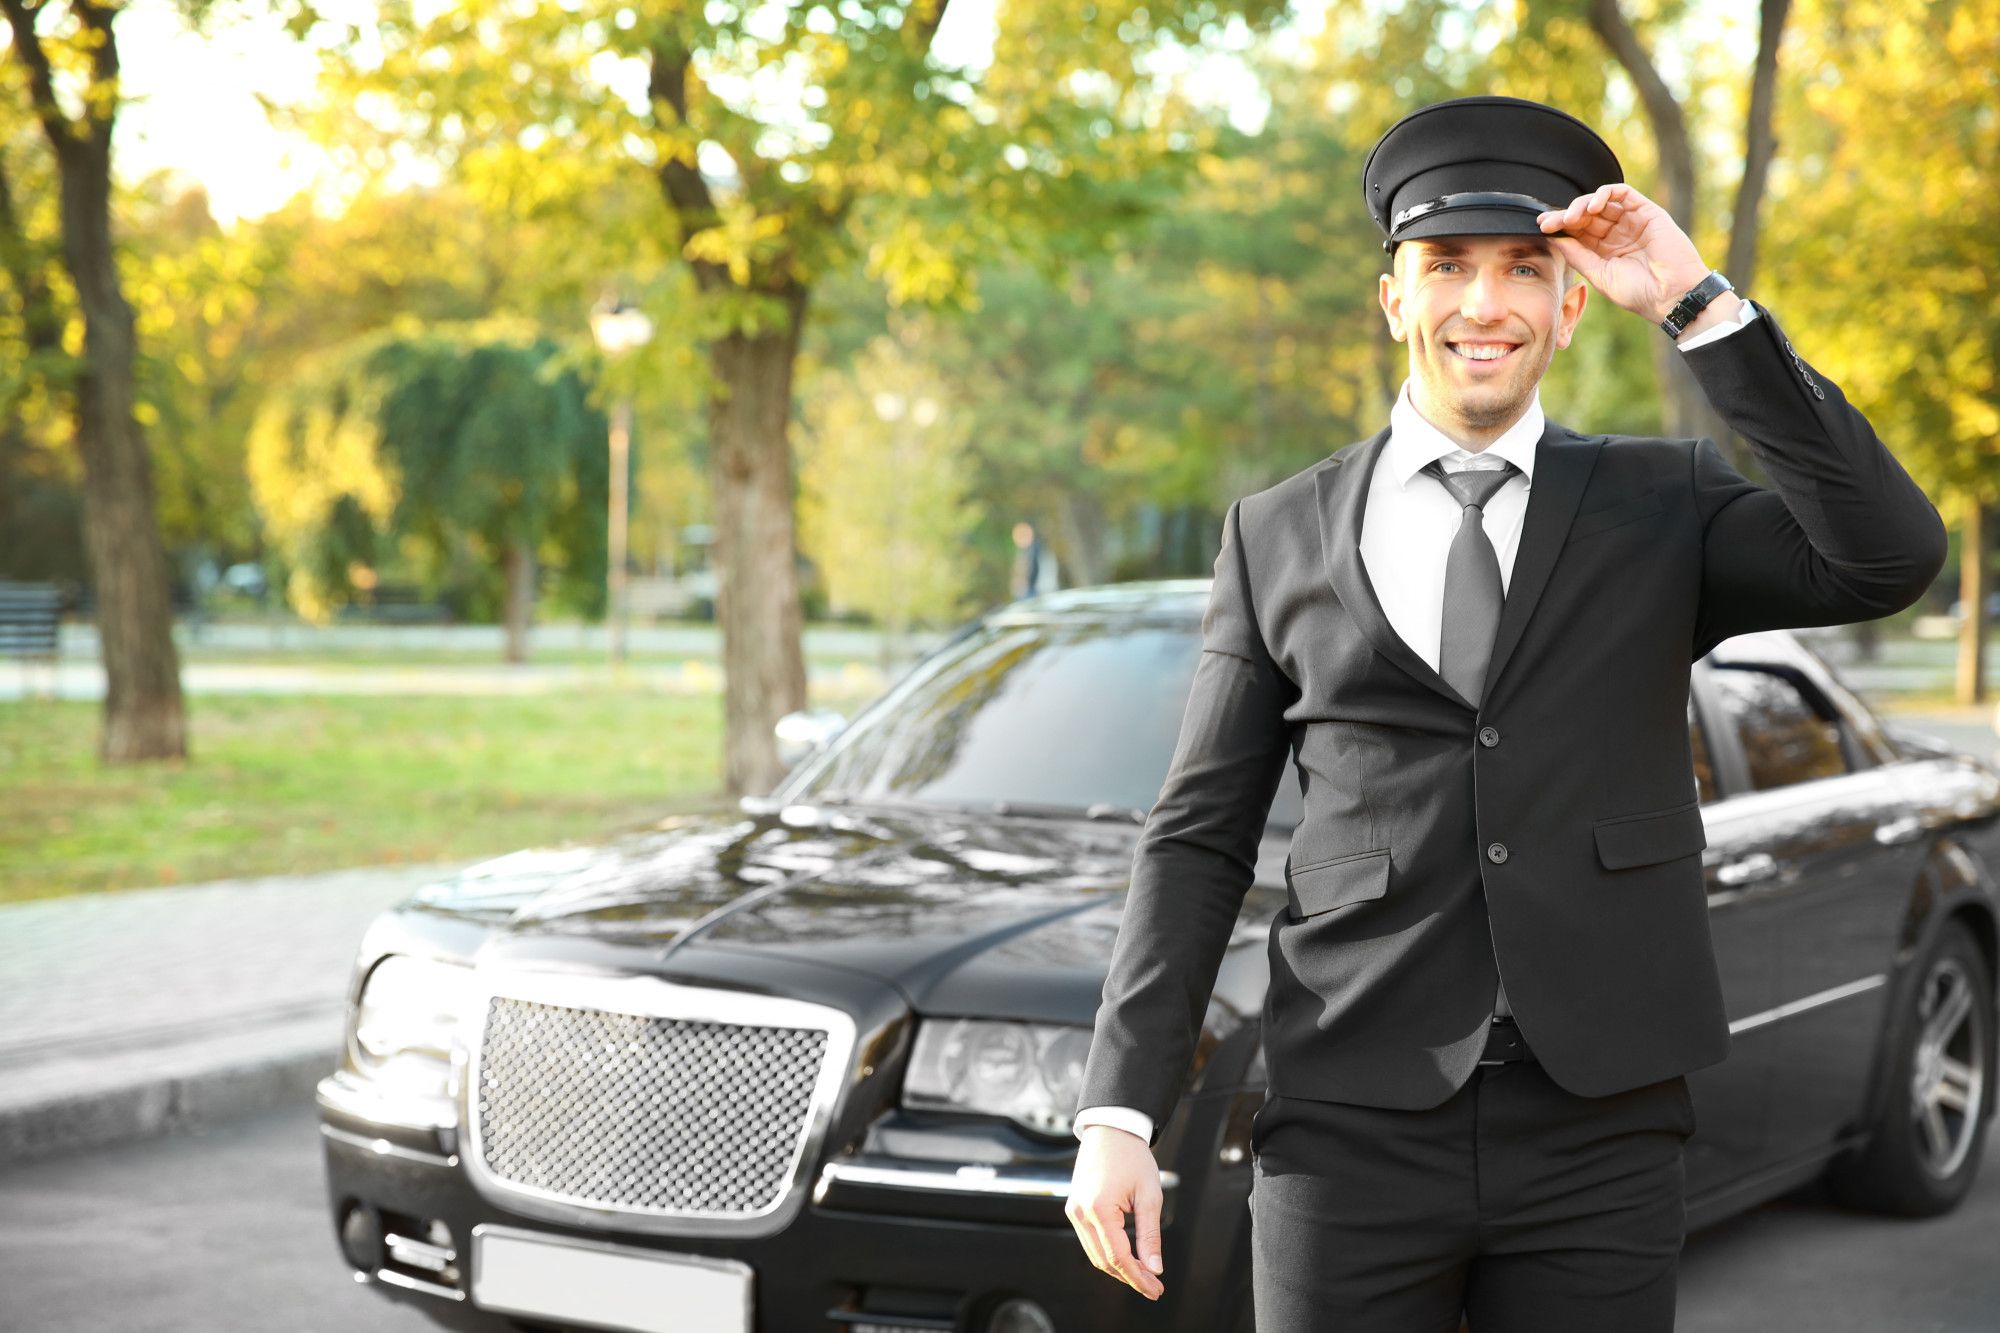 hiring a chauffeur service